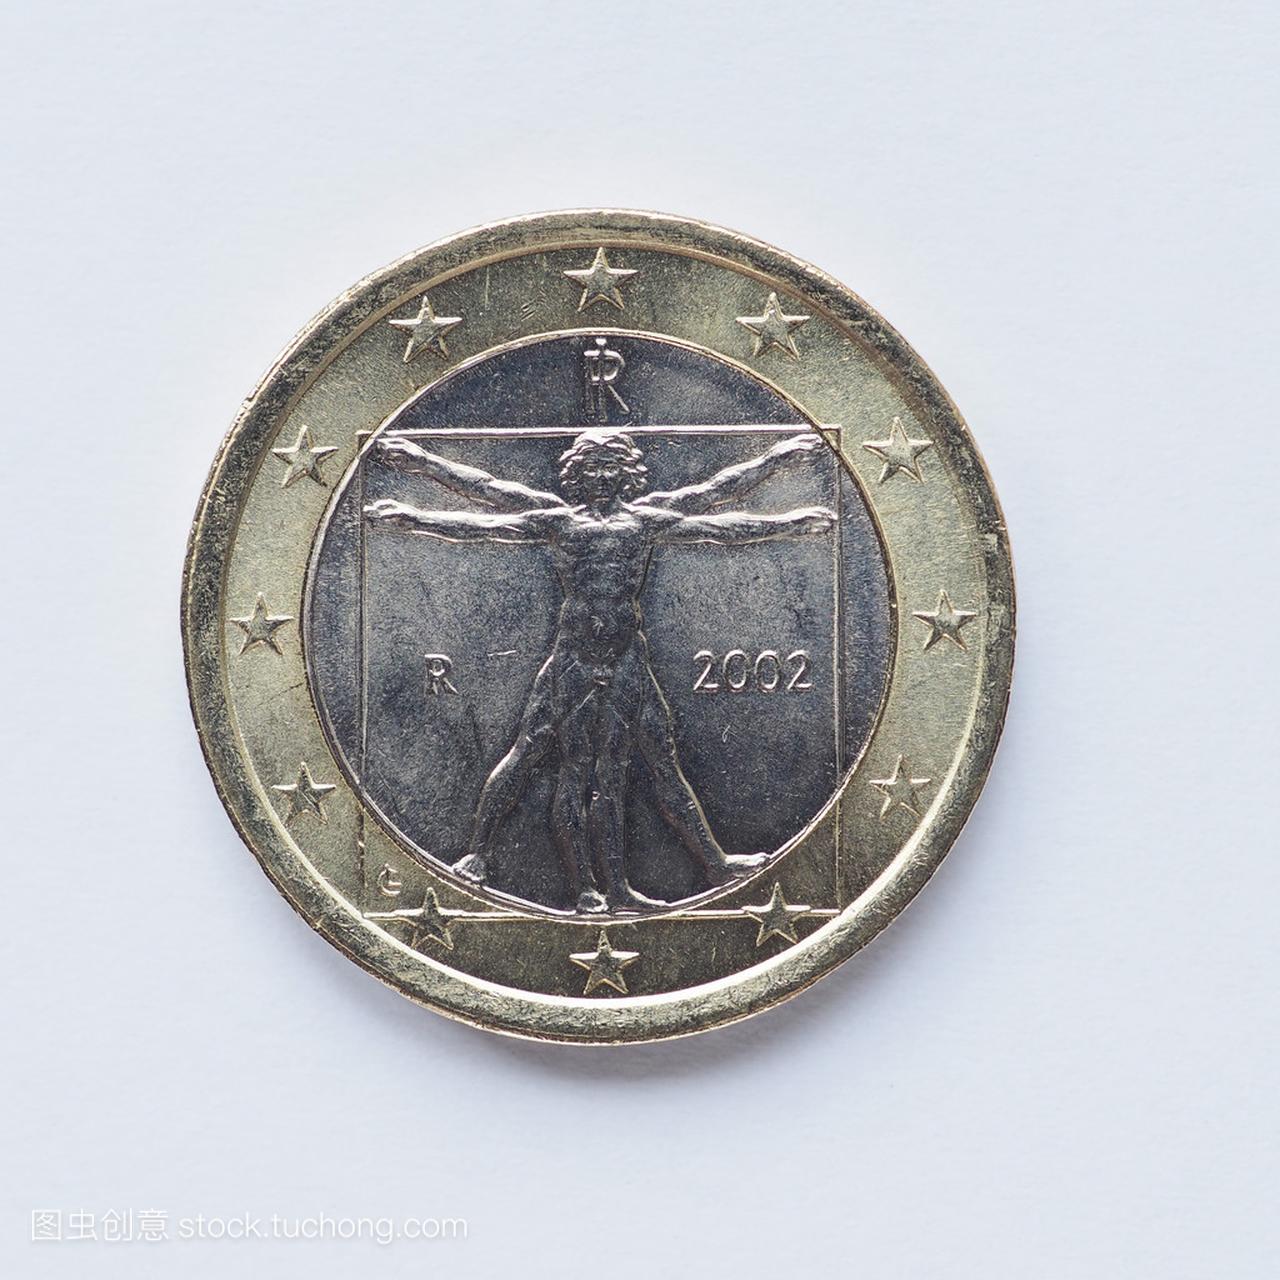 意大利 1 欧元硬币